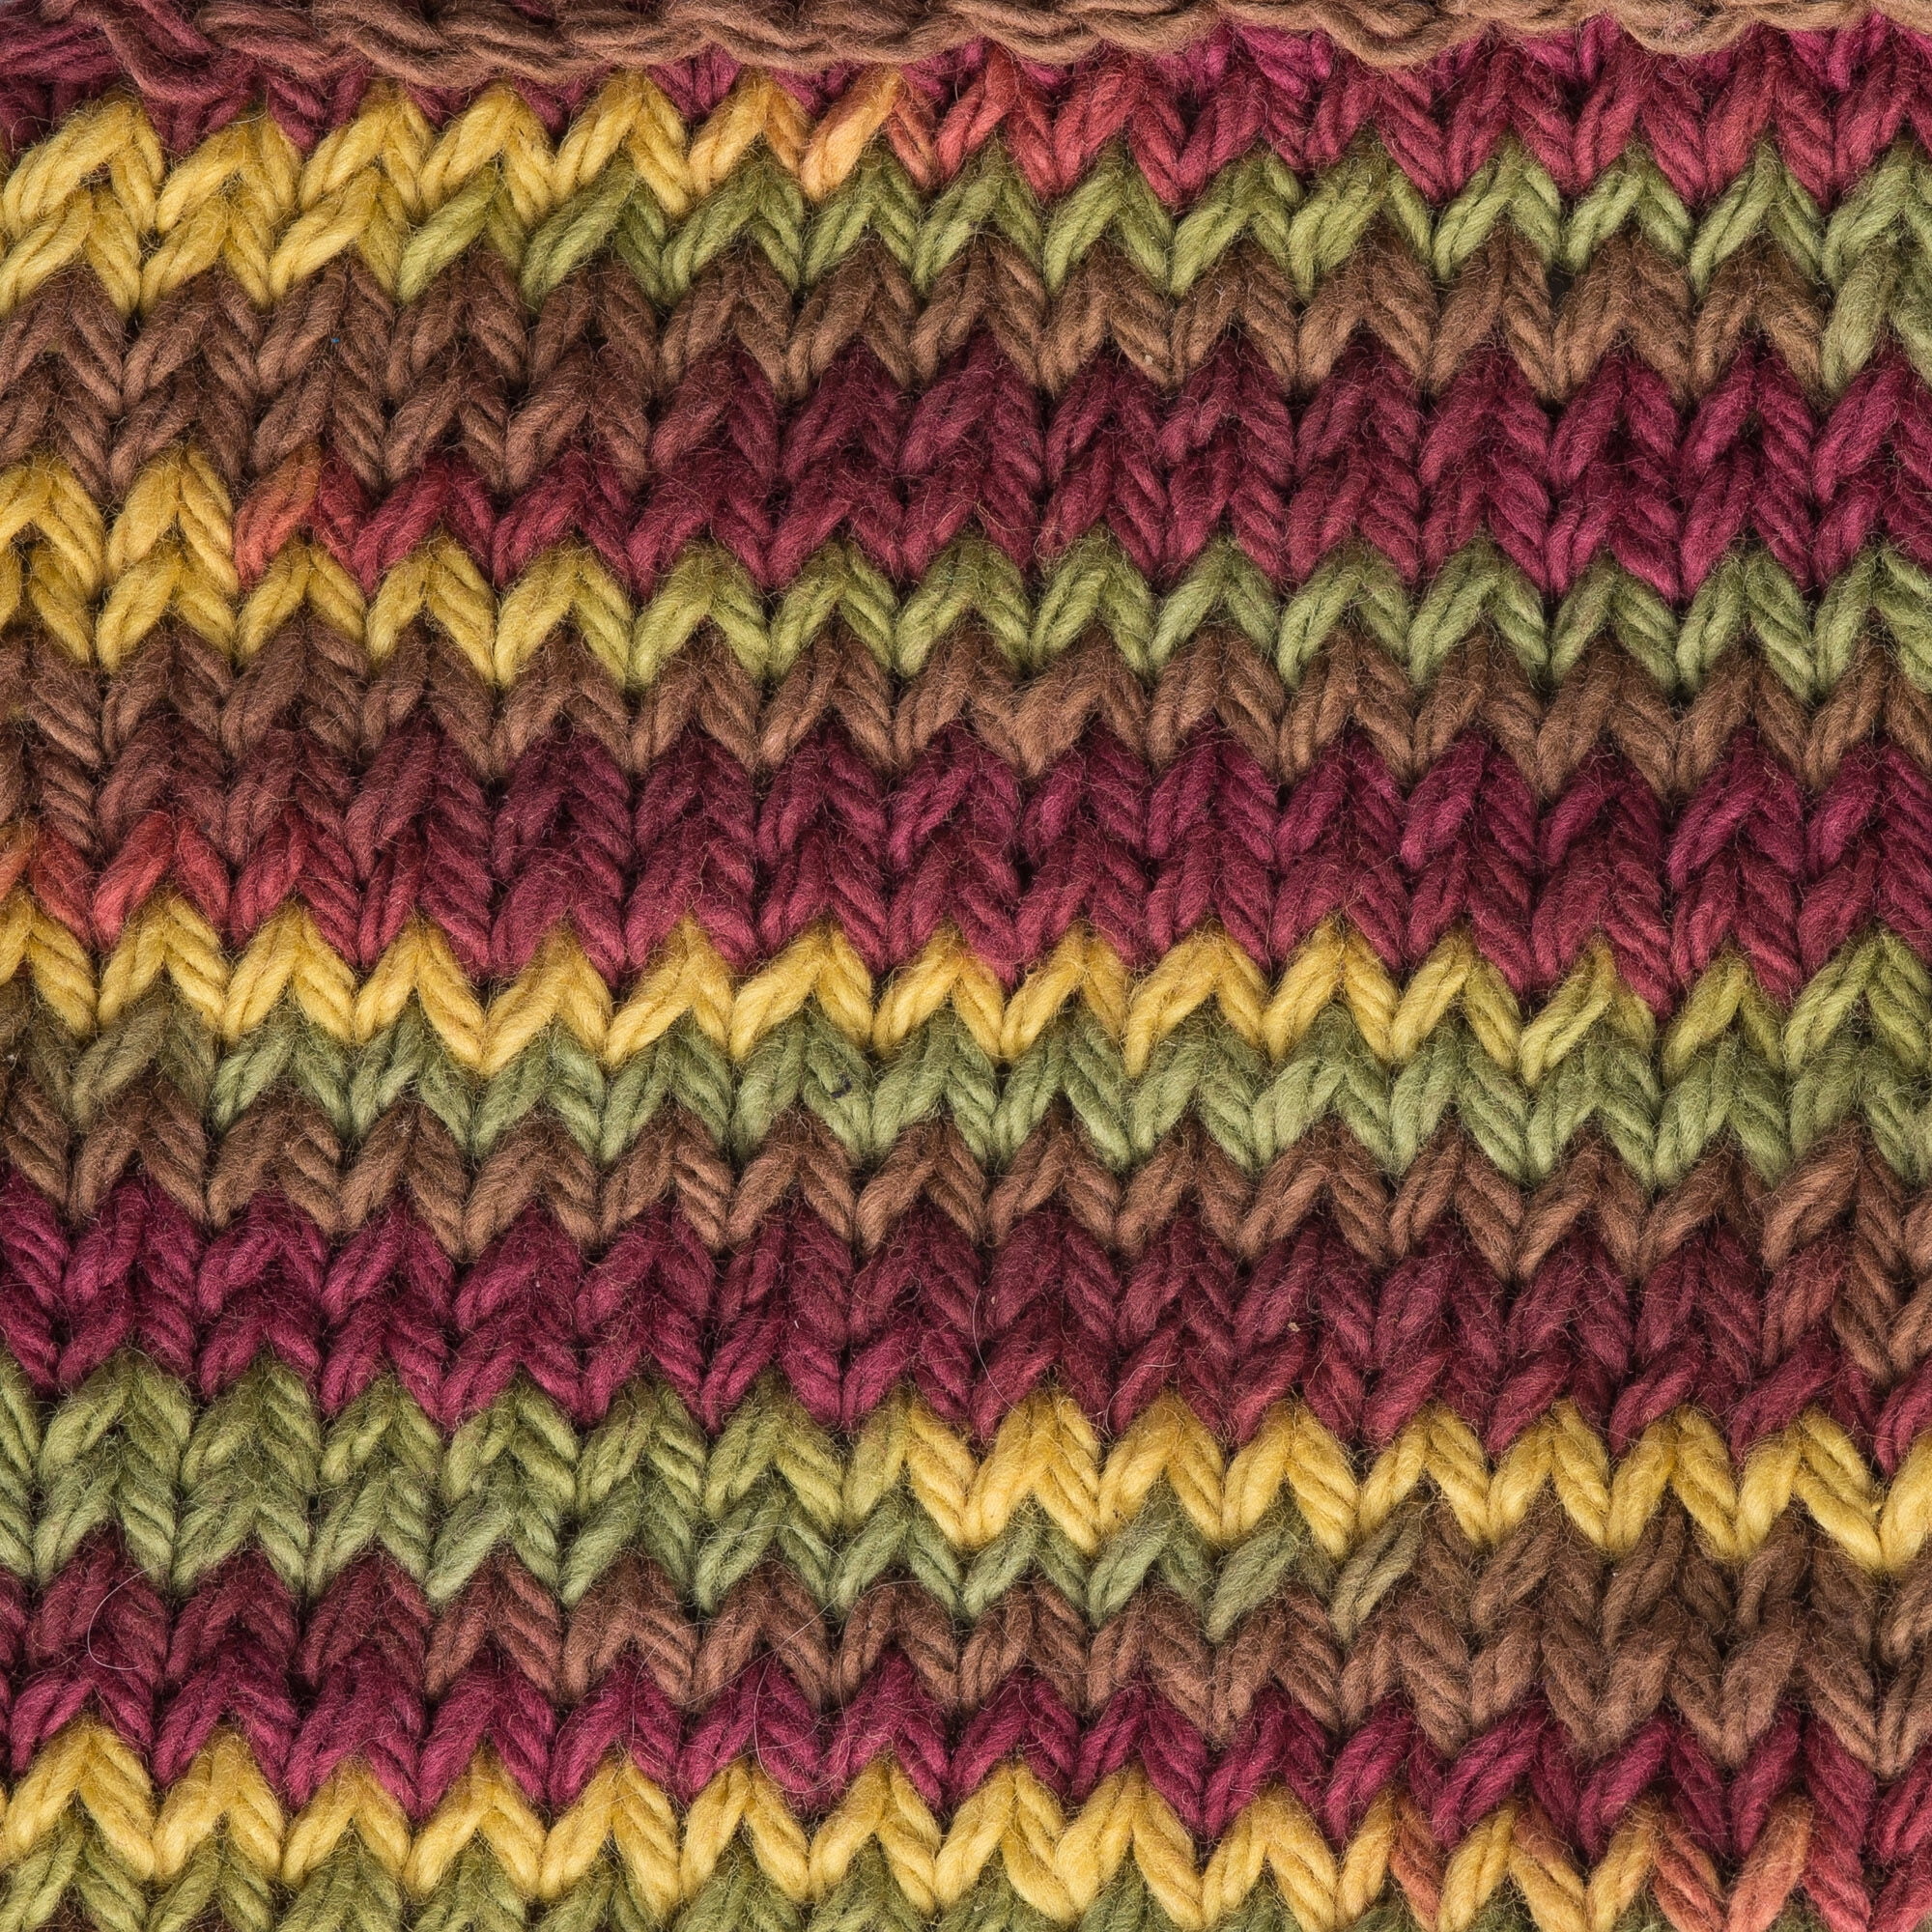 VILLCASE Simply Soft Yarn Sugar and Cream Cotton Yarn Cotton Line Cotton  Yarn for Crochet Cotton Yarn Cone Acrylic Yarn Crochet Yarn Soft Yarn for